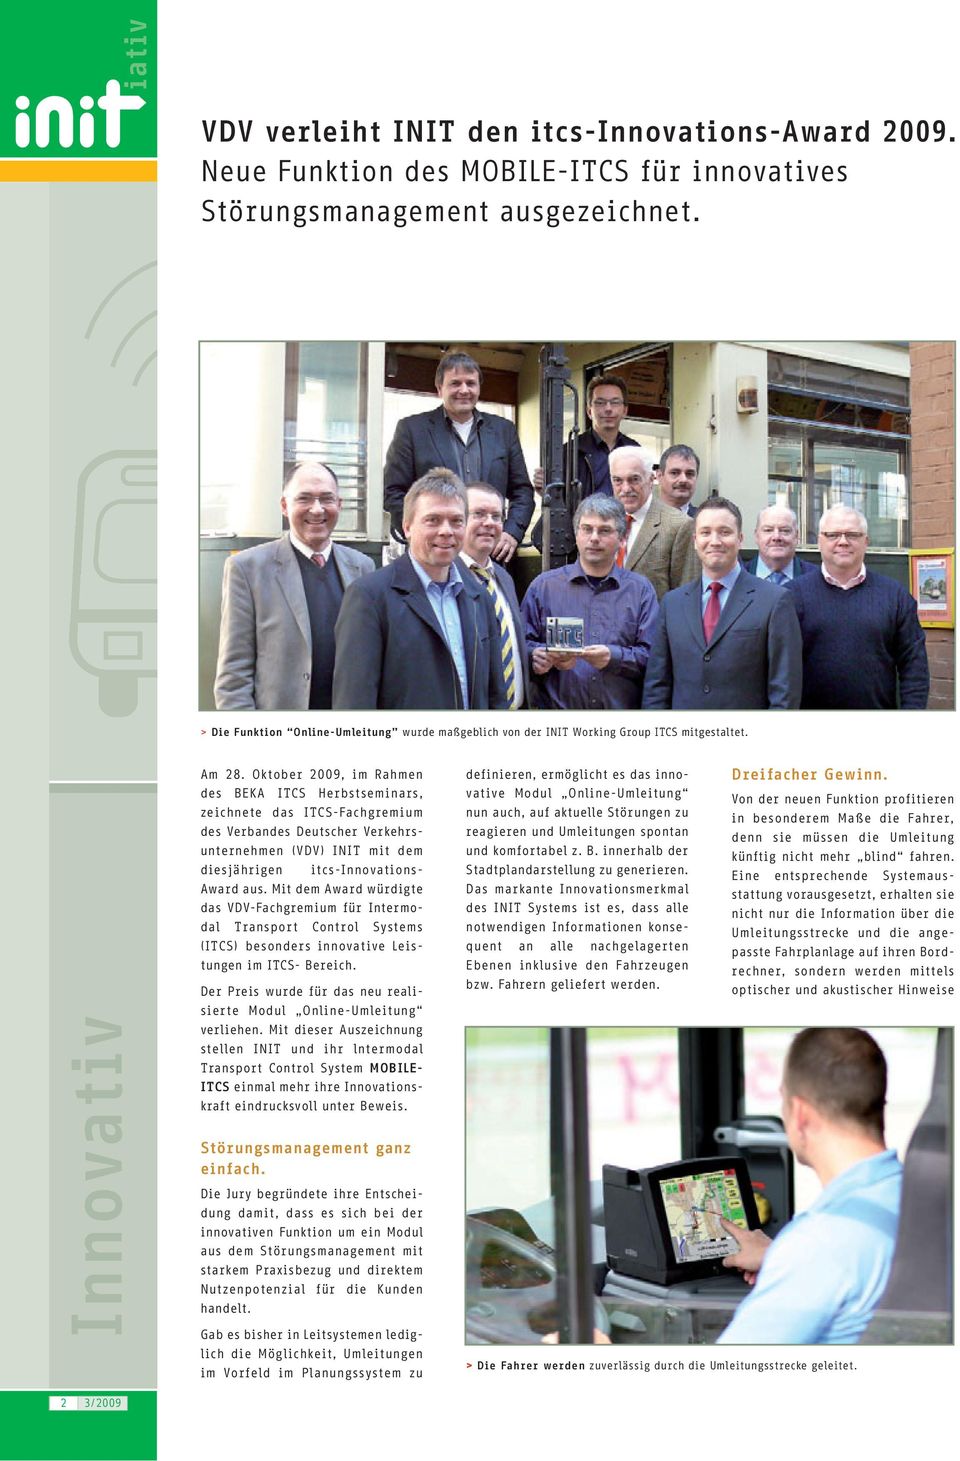 Oktober 2009, im Rahmen des BEKA ITCS Herbstseminars, zeichnete das ITCS-Fachgremium des Verbandes Deutscher Verkehrsunternehmen (VDV) INIT mit dem diesjährigen itcs-innovations- Award aus.